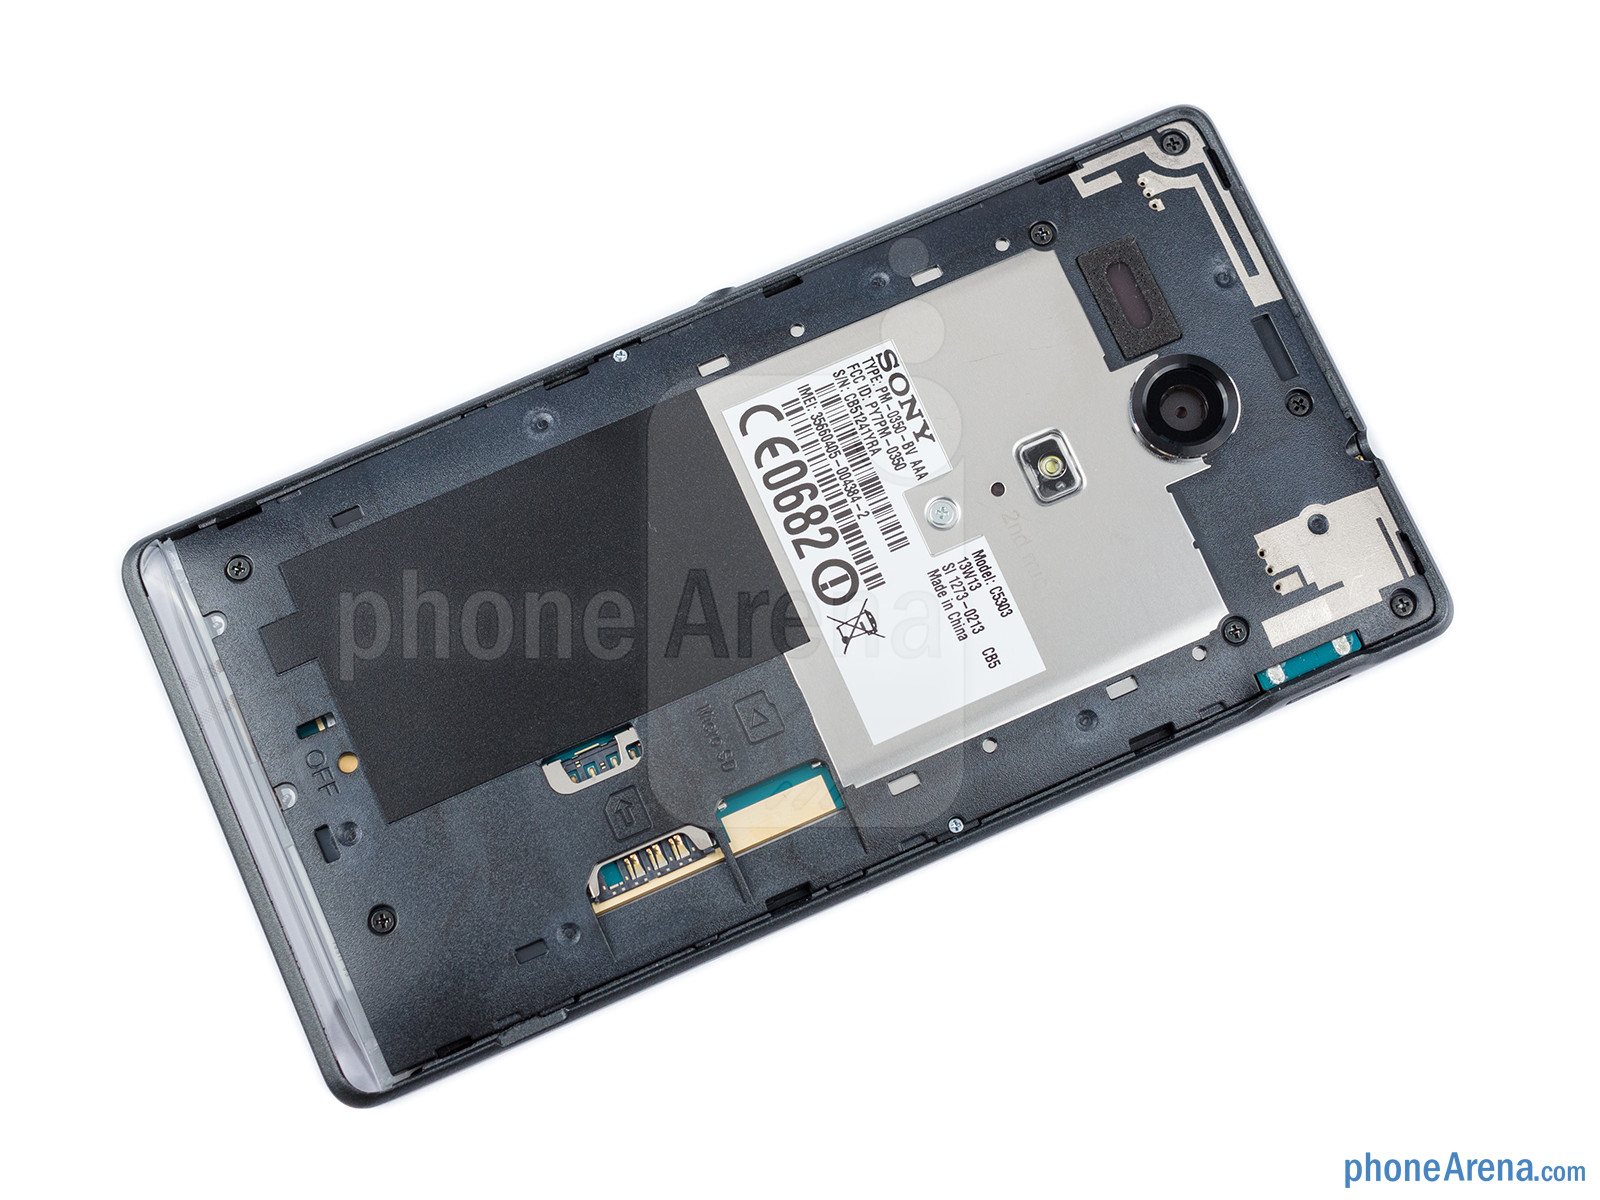 Sony Xperia SP: Cấu hình "ngon", thiết kế chắc chắn nhưng camera chưa tốt 10